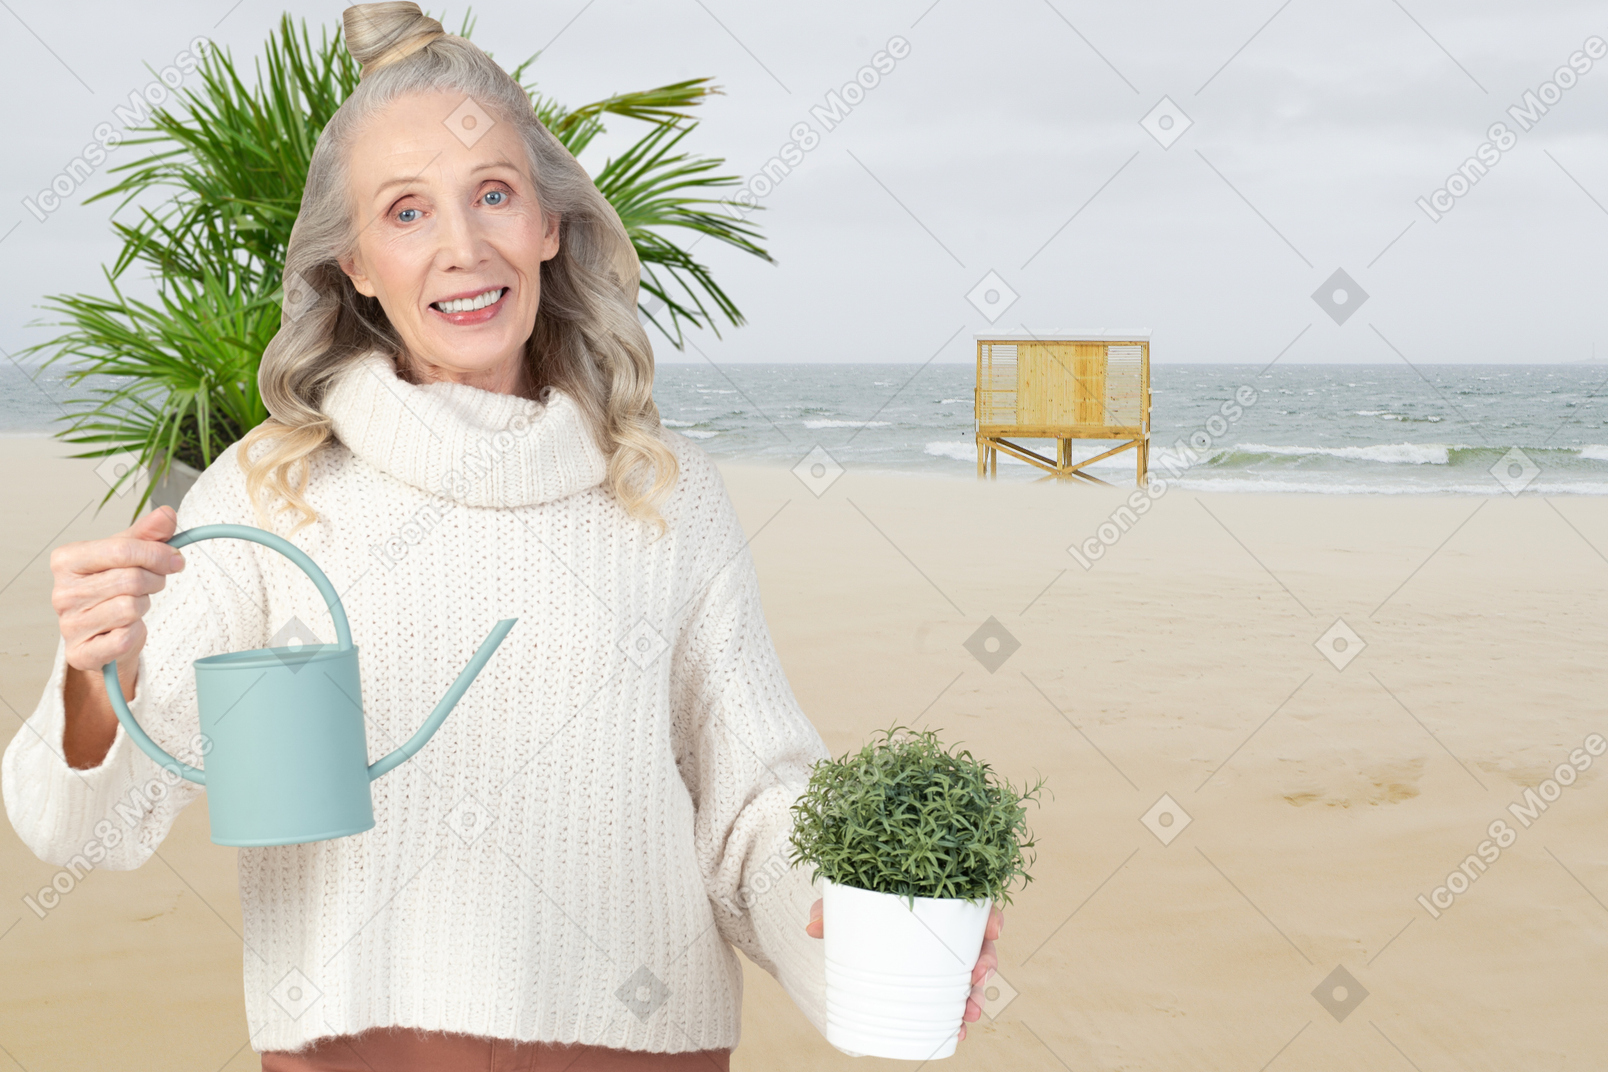 해변 배경에 물뿌리개와 화분을 들고 있는 원로 여성